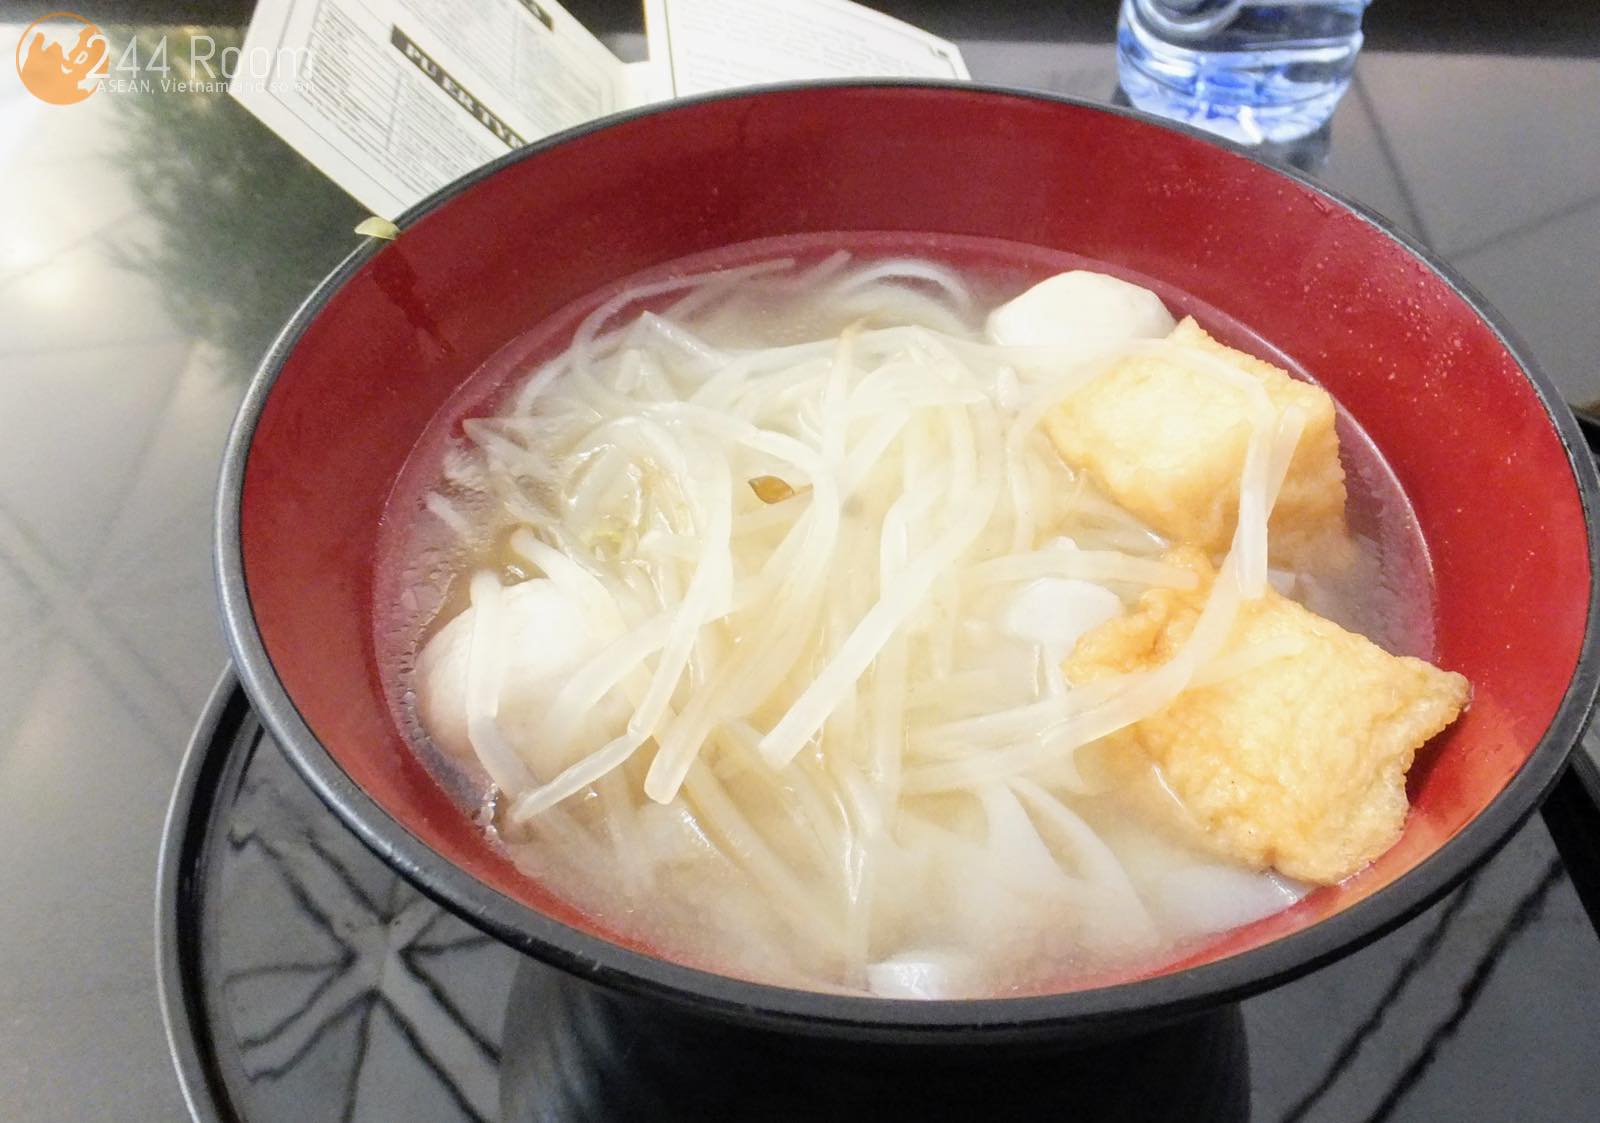 ザヌードルバー魚介肉団子麺　The noodle bar fishball noodle